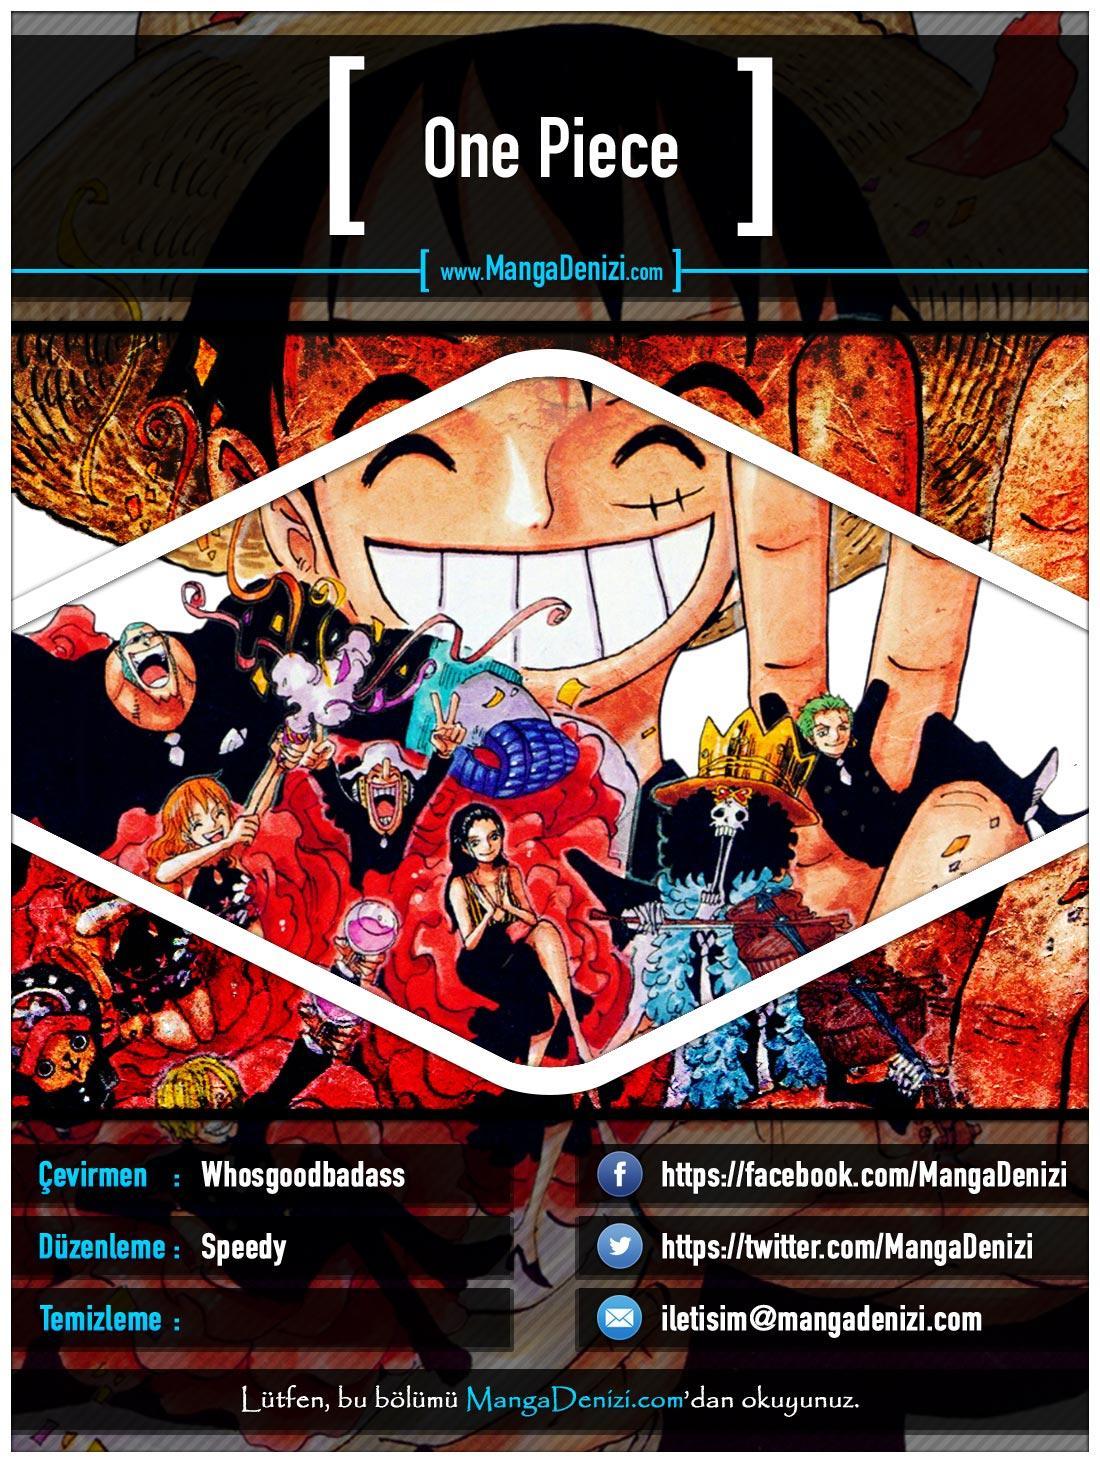 One Piece [Renkli] mangasının 0441 bölümünün 1. sayfasını okuyorsunuz.